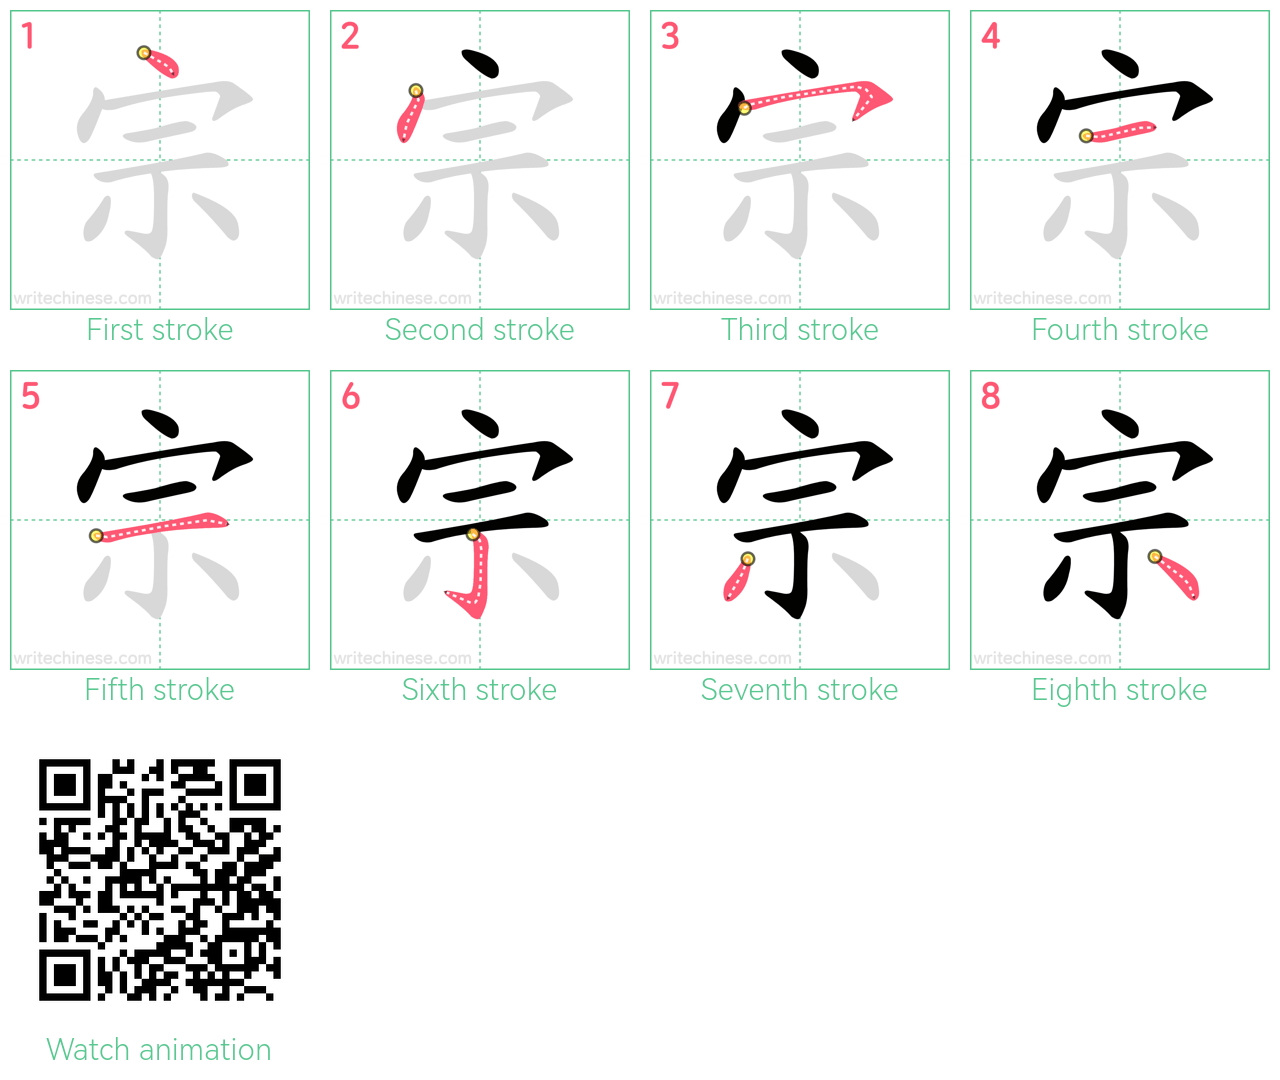 宗 step-by-step stroke order diagrams